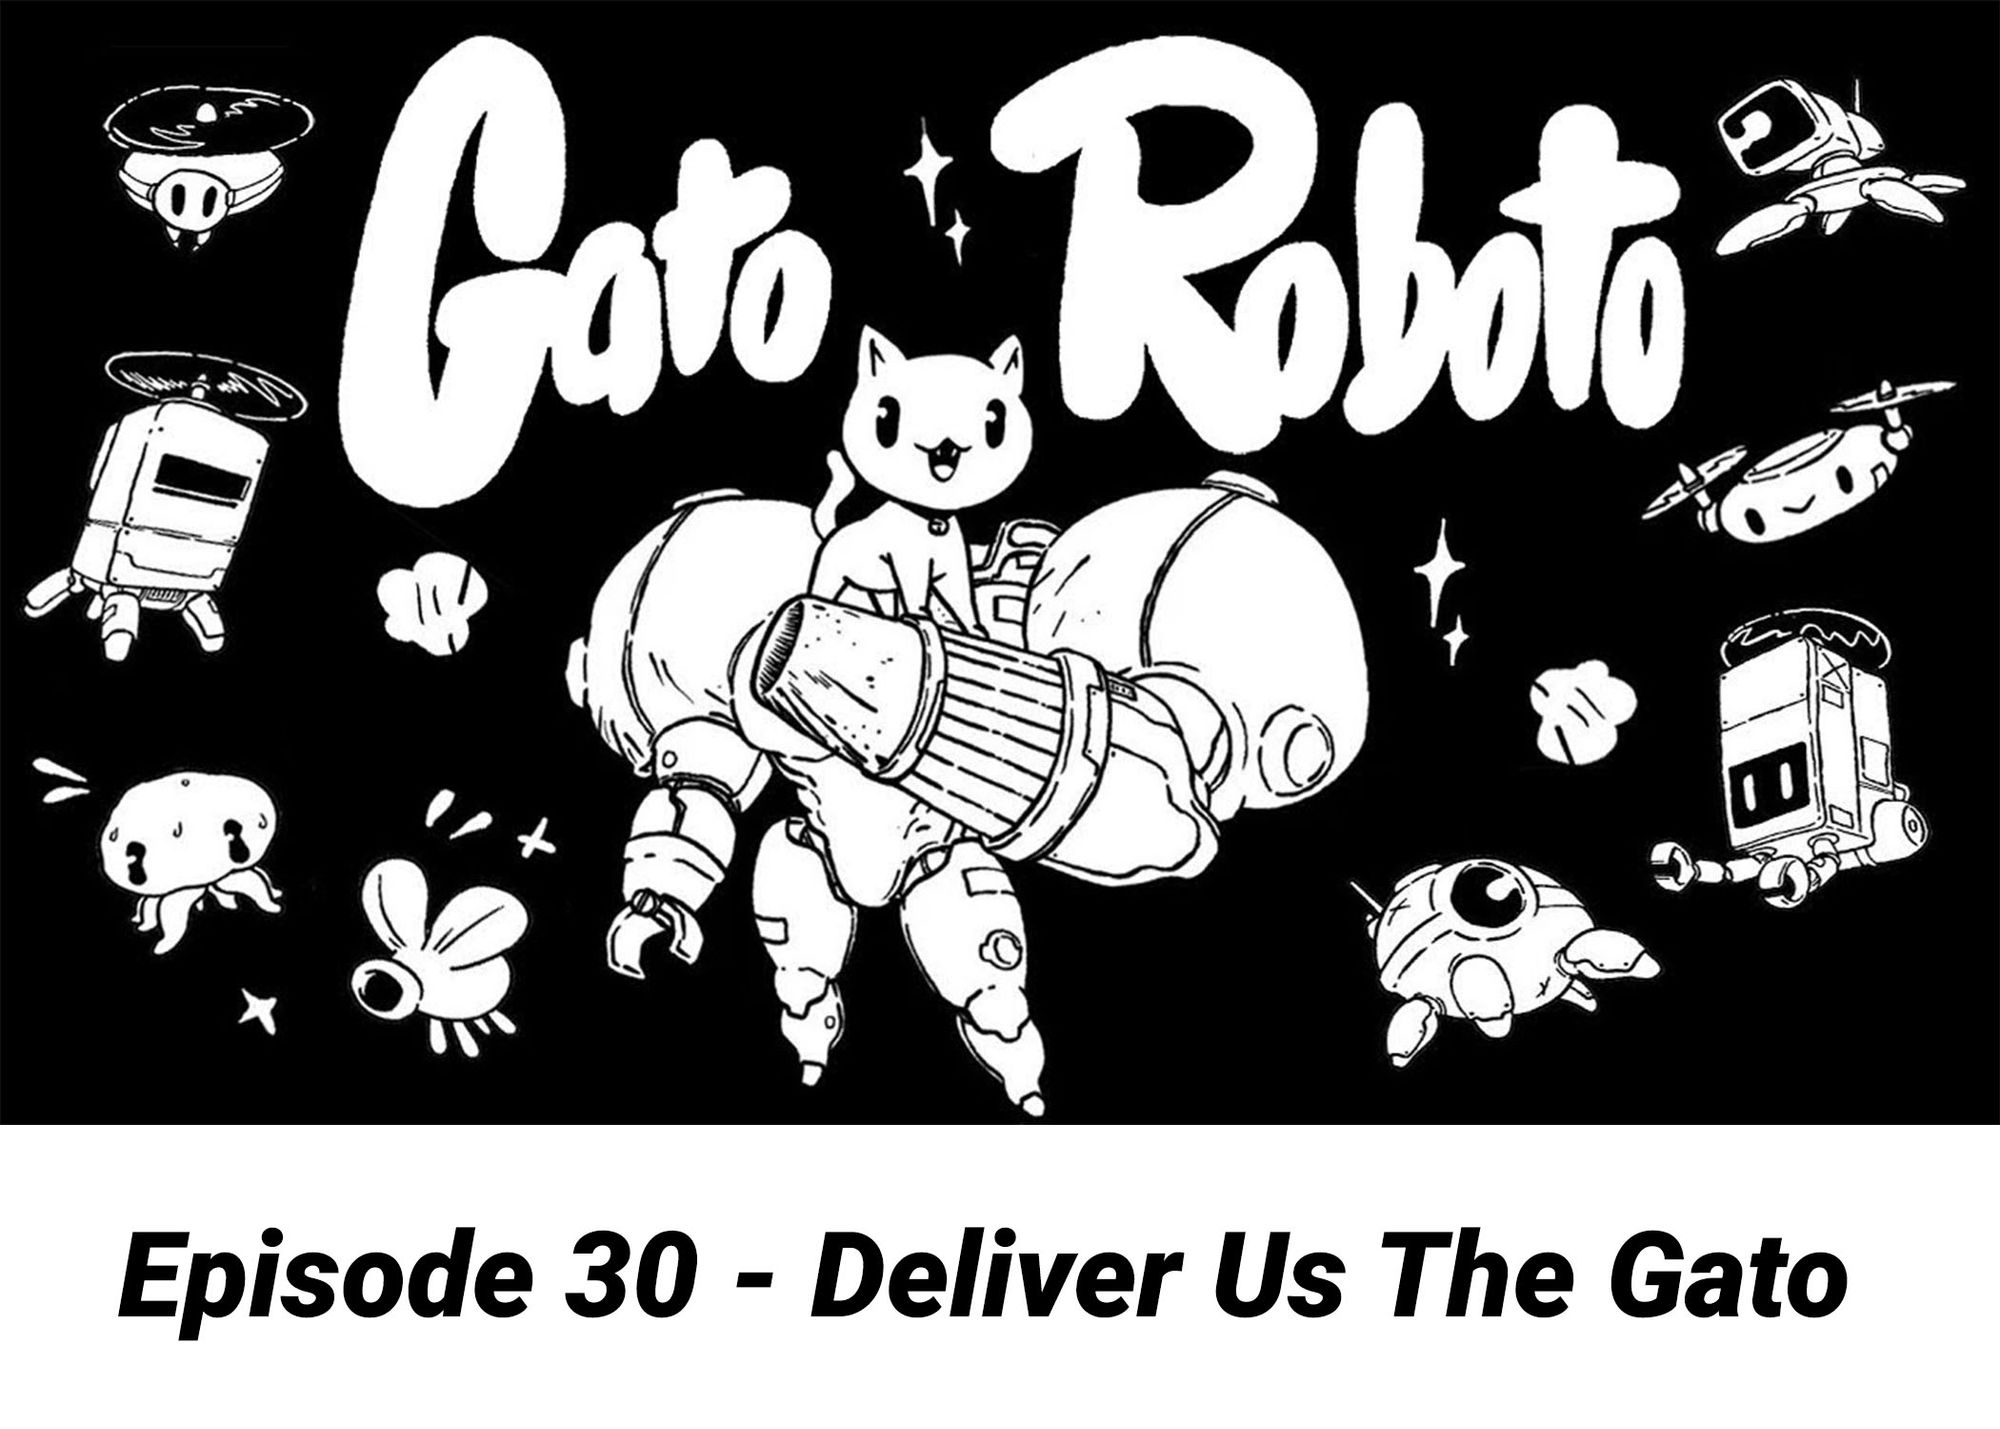 Episode 30 - Deliver Us The Gato